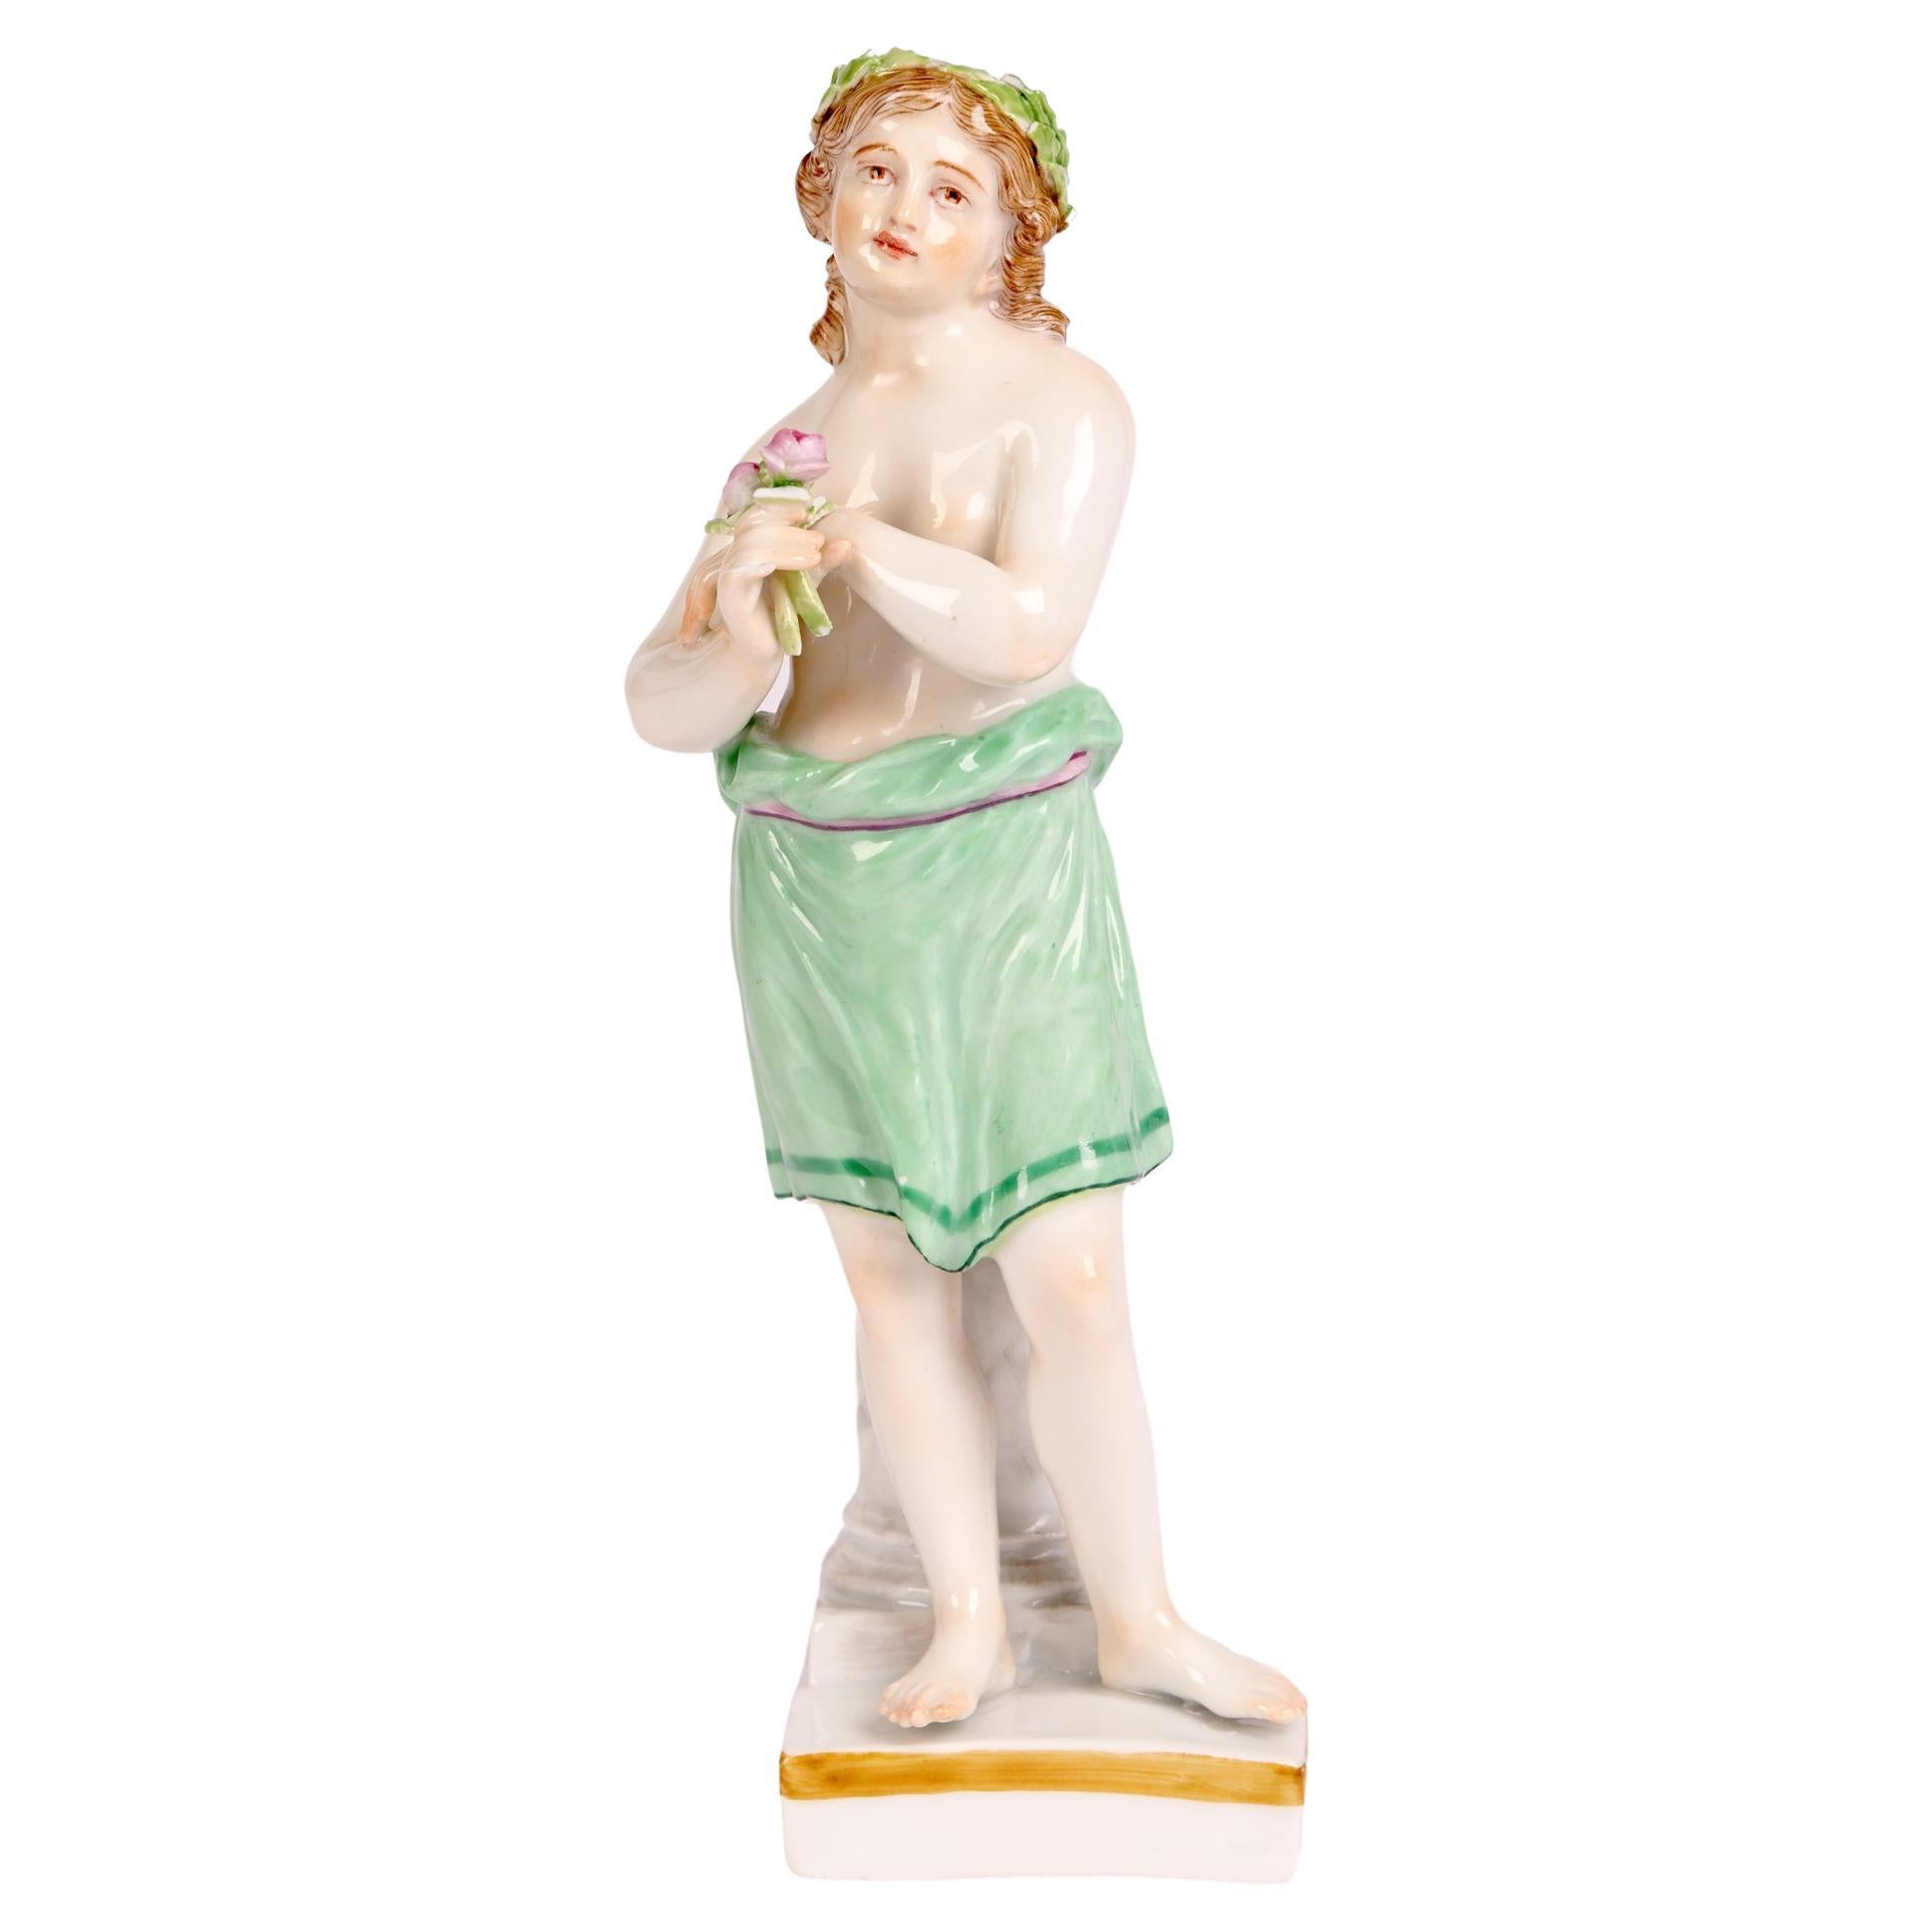 Meissener Porzellanfigur eines klassischen Jungen, der Blumen hält